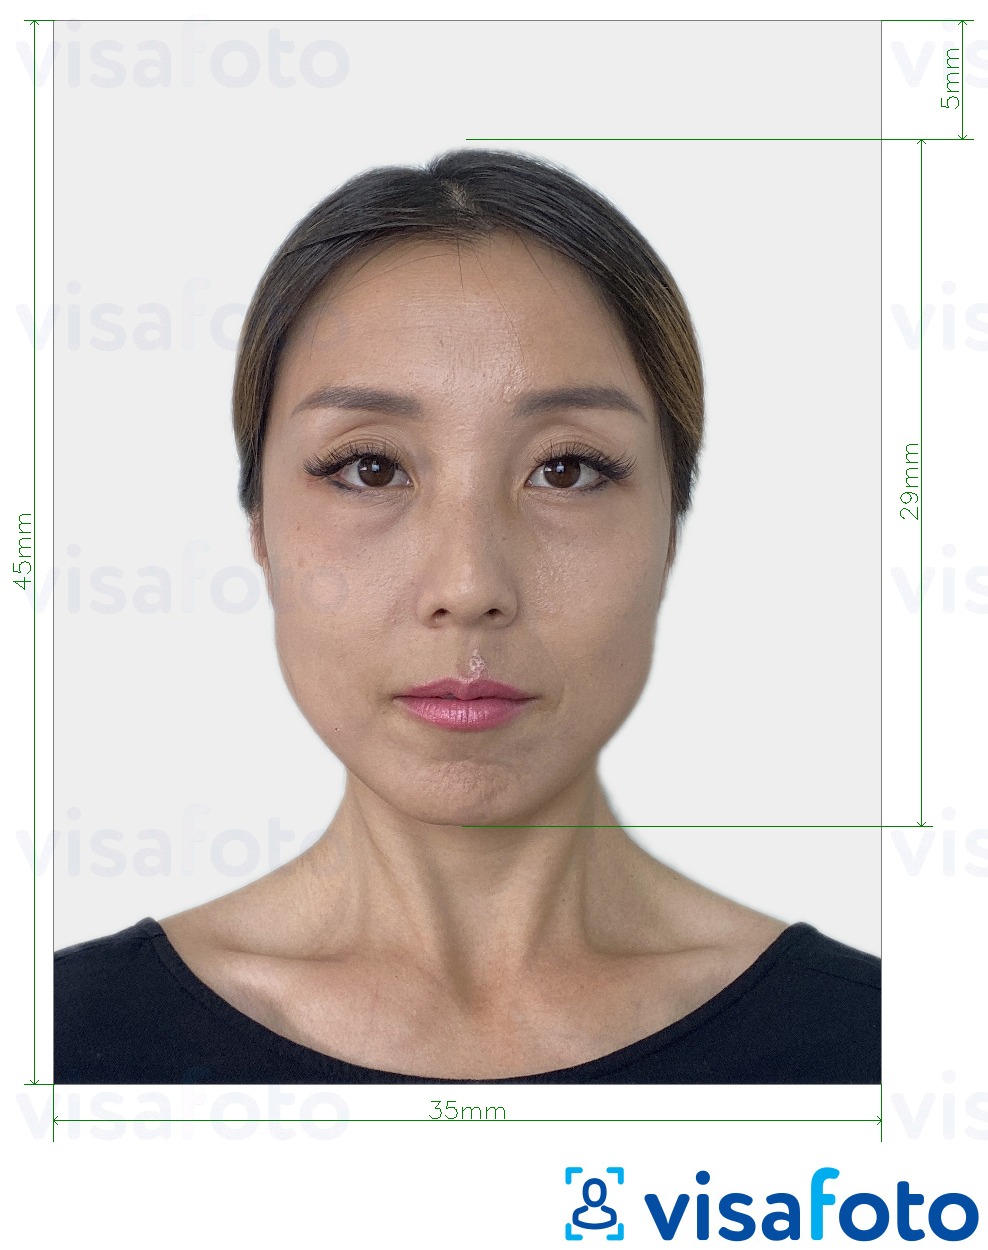 Fotobeispiel für E-Visum für Japan 35 x 45 mm mit genauer größenangabe